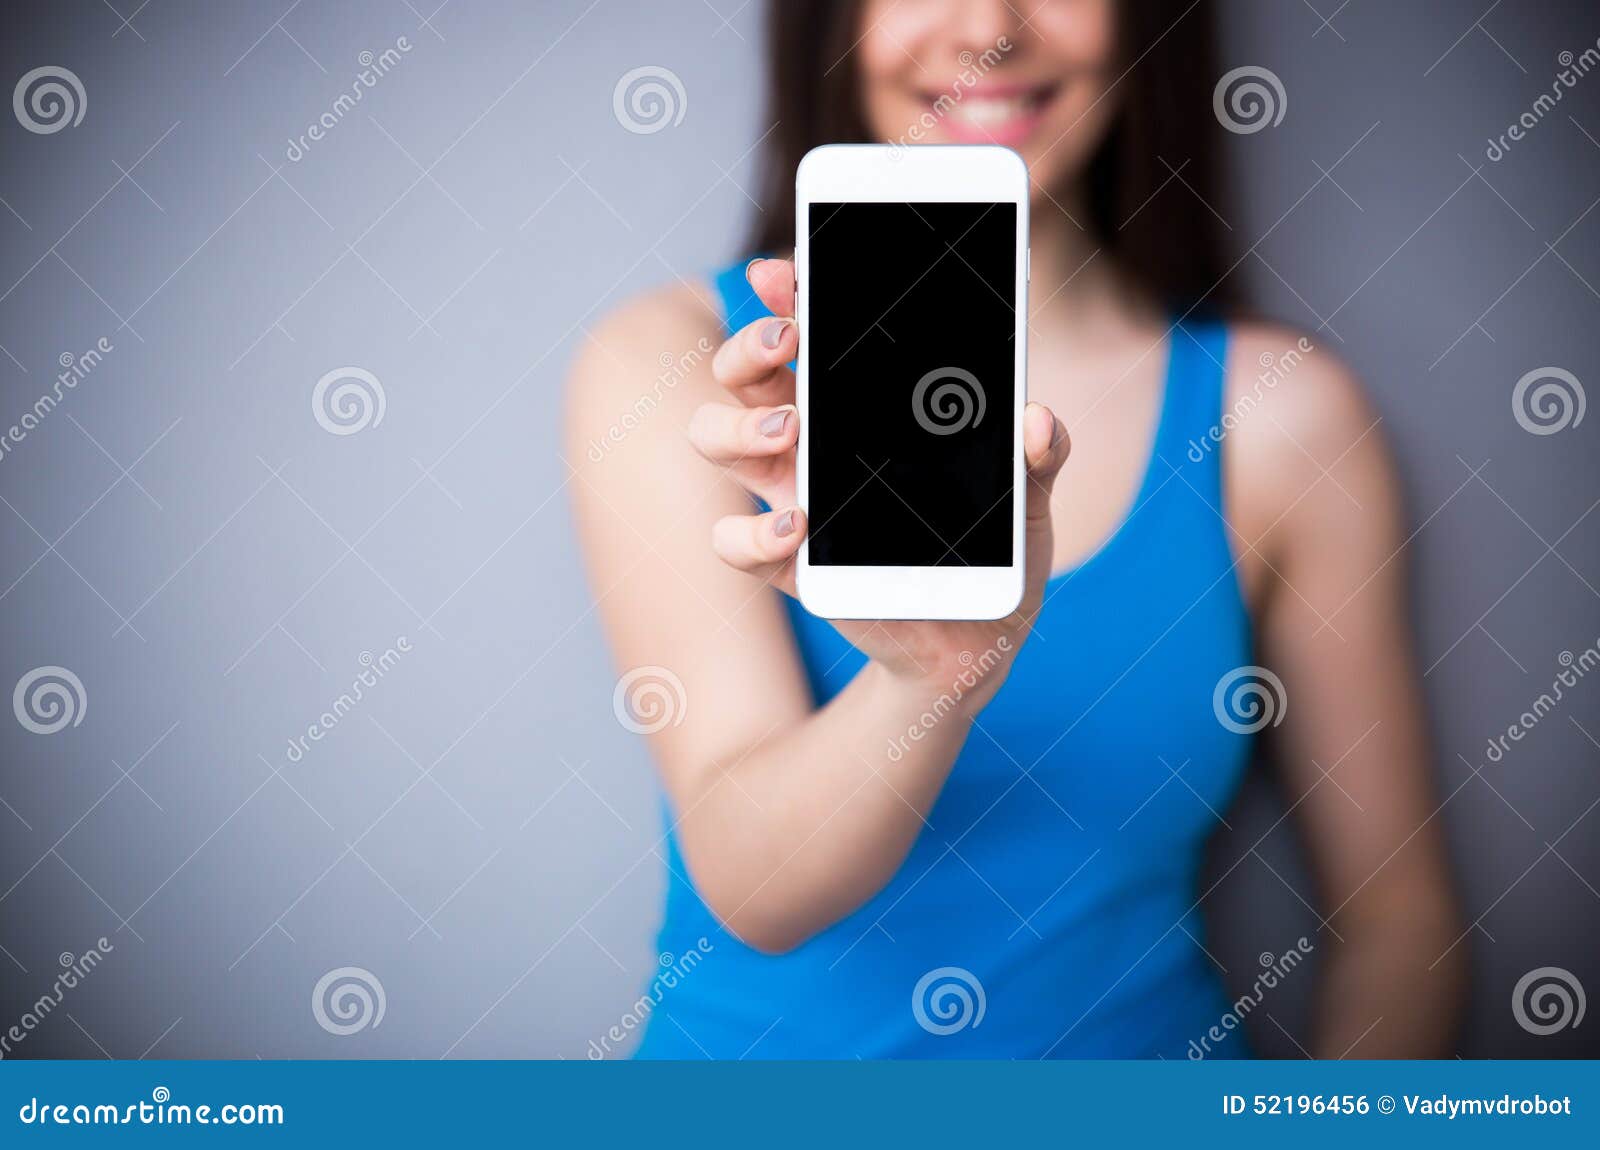 Скрыто показывают женщин. Девушка показывает телефон. Девушка показывает экран телефона. Девушка показывает телефон в руке. Девушка с телефоном в руках показывает экран.